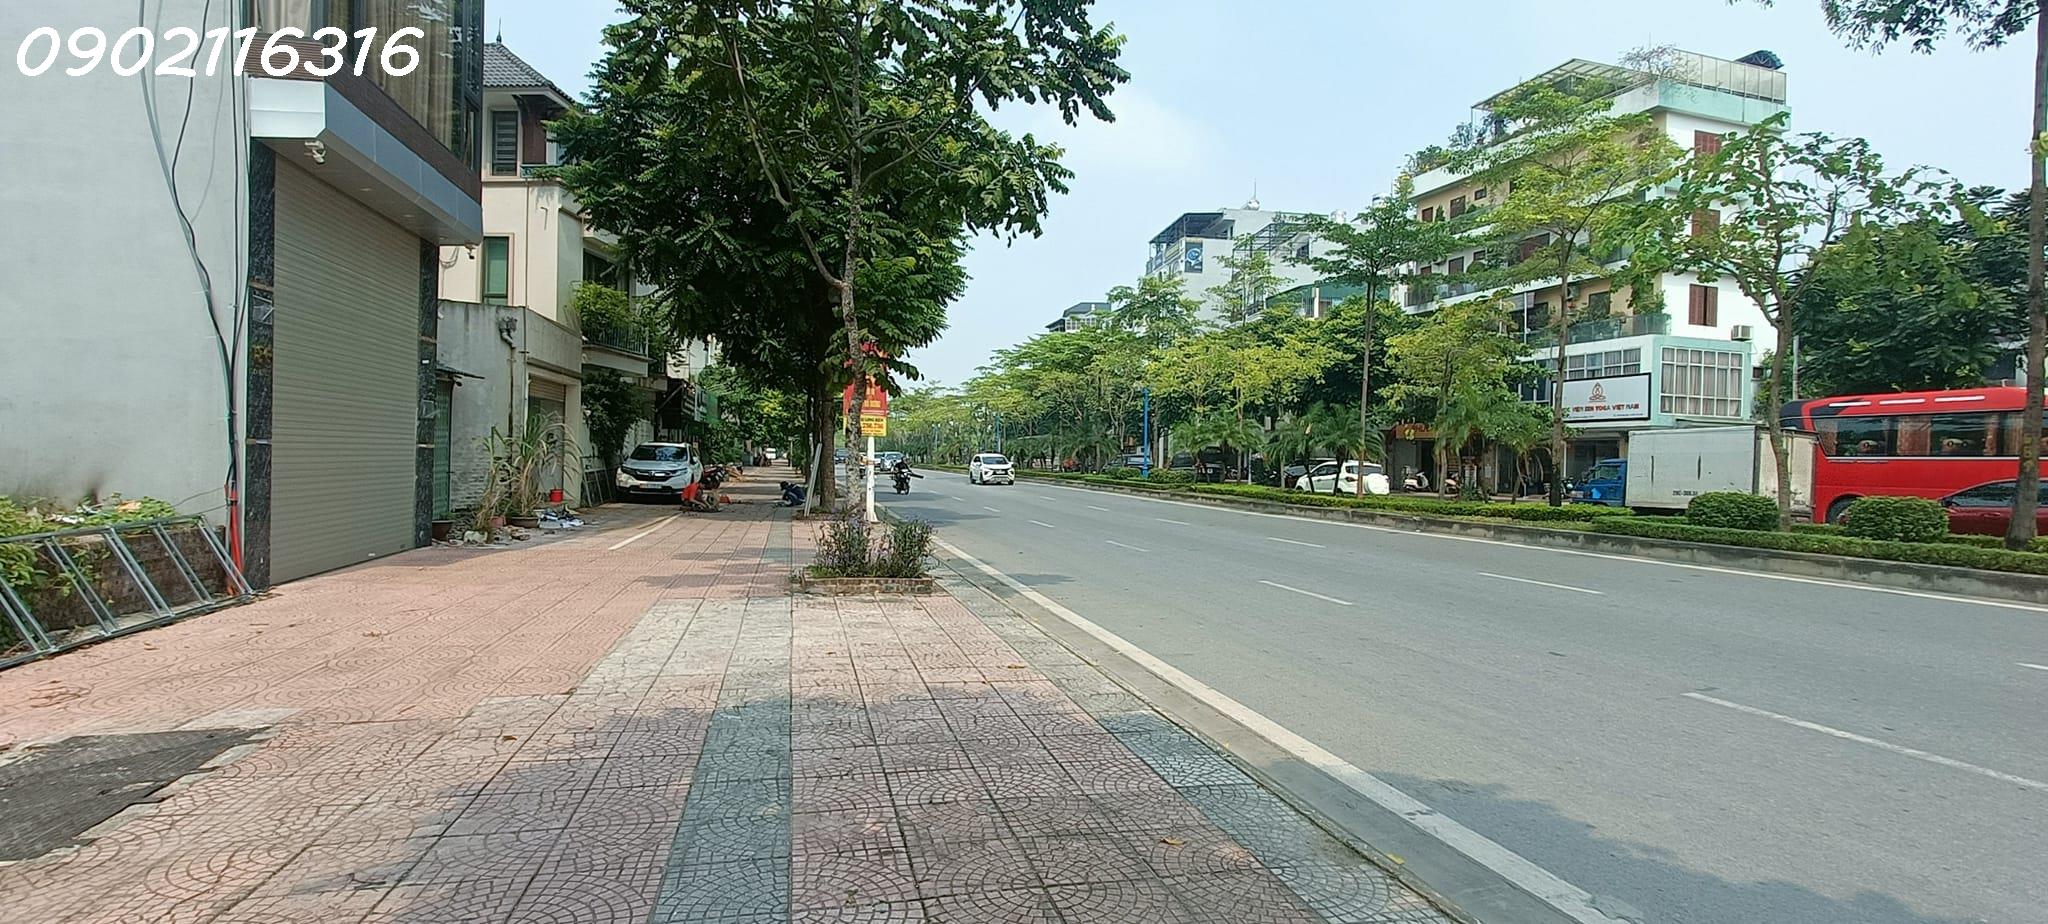 Bán đất mặt phố Cổ Linh, Long Biên, ô tô dừng đỗ ngày đêm, kinh doanh bất tận, 70m2, MT 5,2m, vuông vắn, giá chào 15 tỷ 1